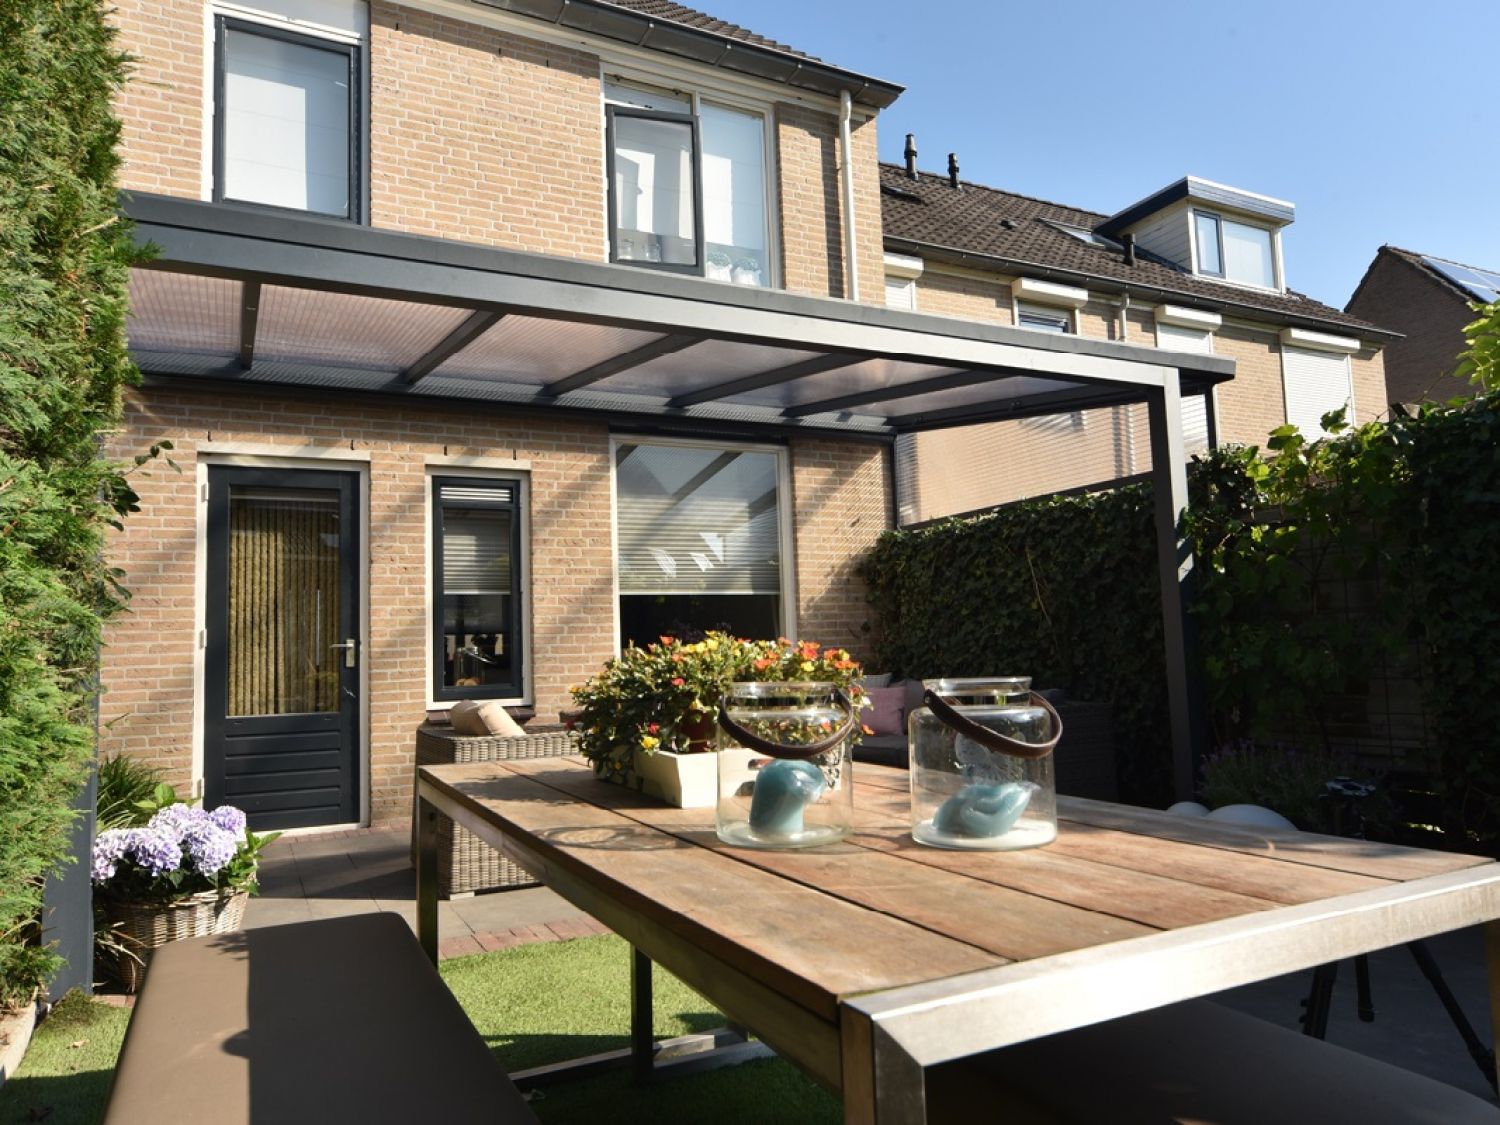 Greenline veranda 600x250 cm - 2 staanders - polycarbonaat dak